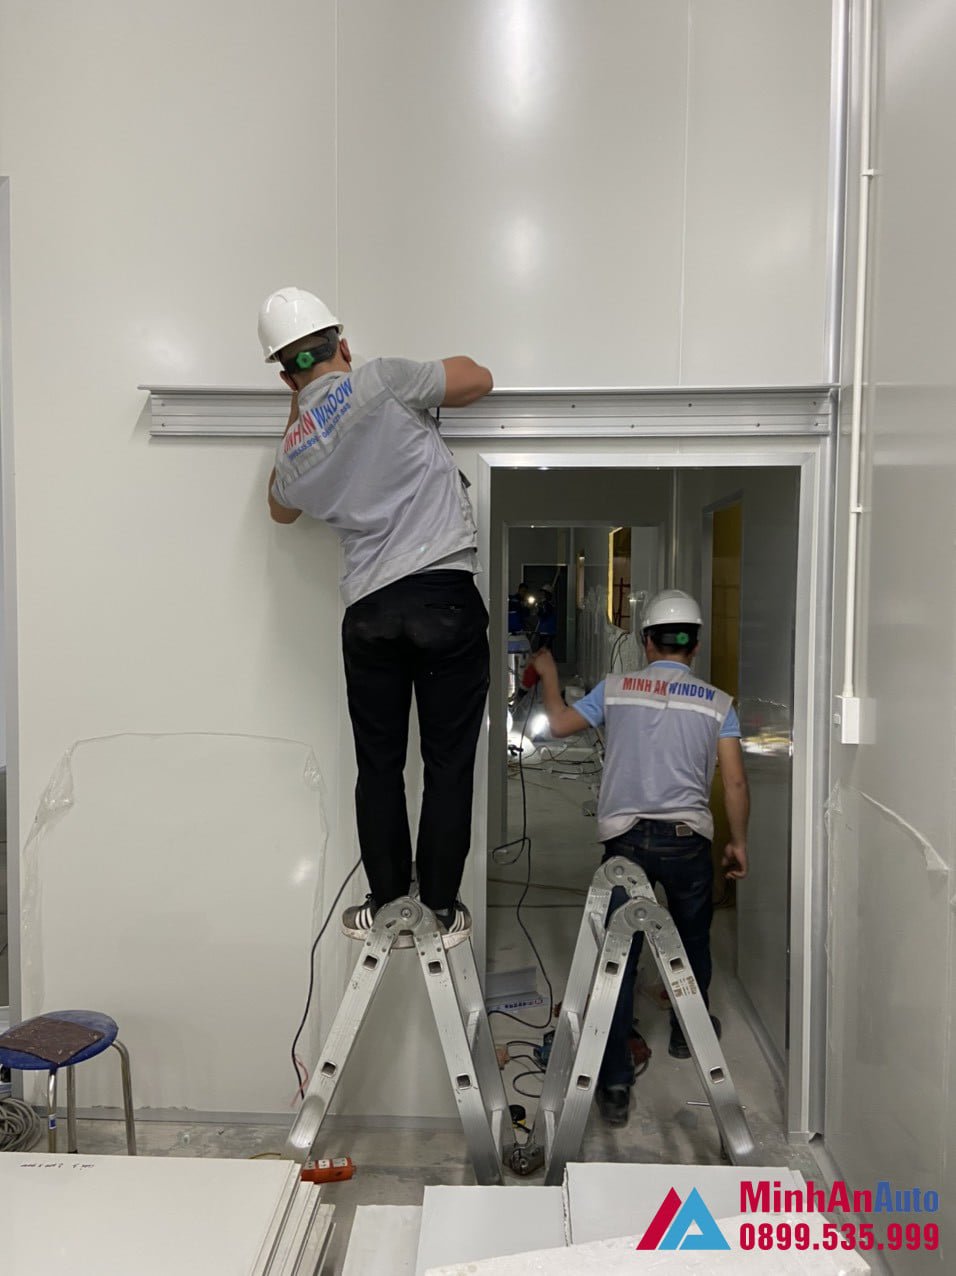 Nhân viên kỹ thuật của Minh An đang tiến hành lắp đặt cửa tự động cho phòng sạch